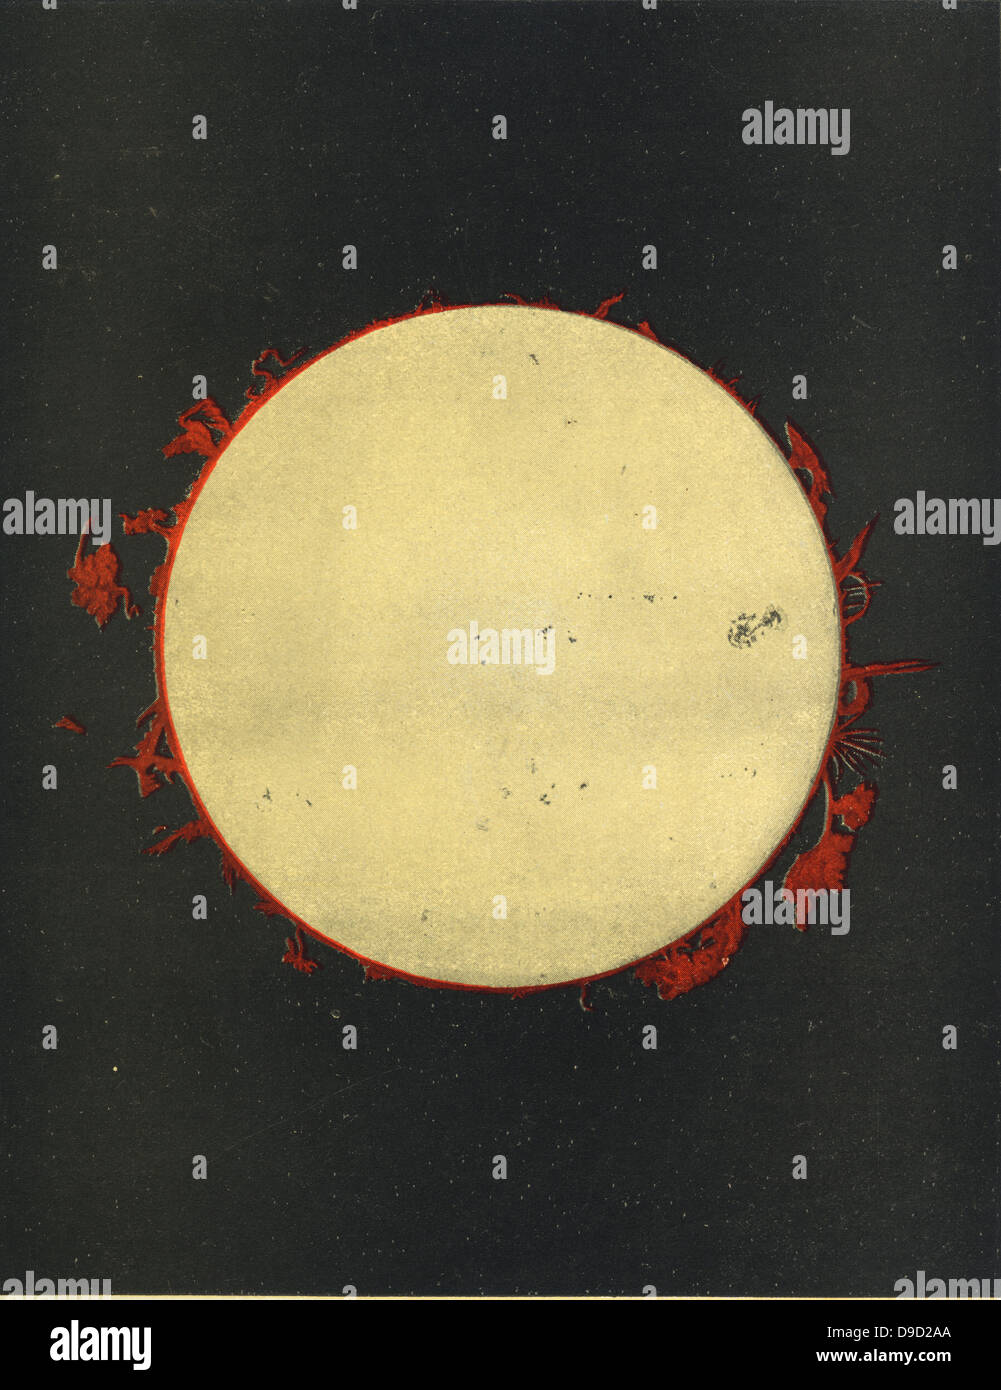 Osservazioni del sole realizzata presso la Harvard College Observatory, Cambridge, Massachusetts, USA durante il 1873, mostra sporgenze e le macchie solari. Chomolithograph. Foto Stock